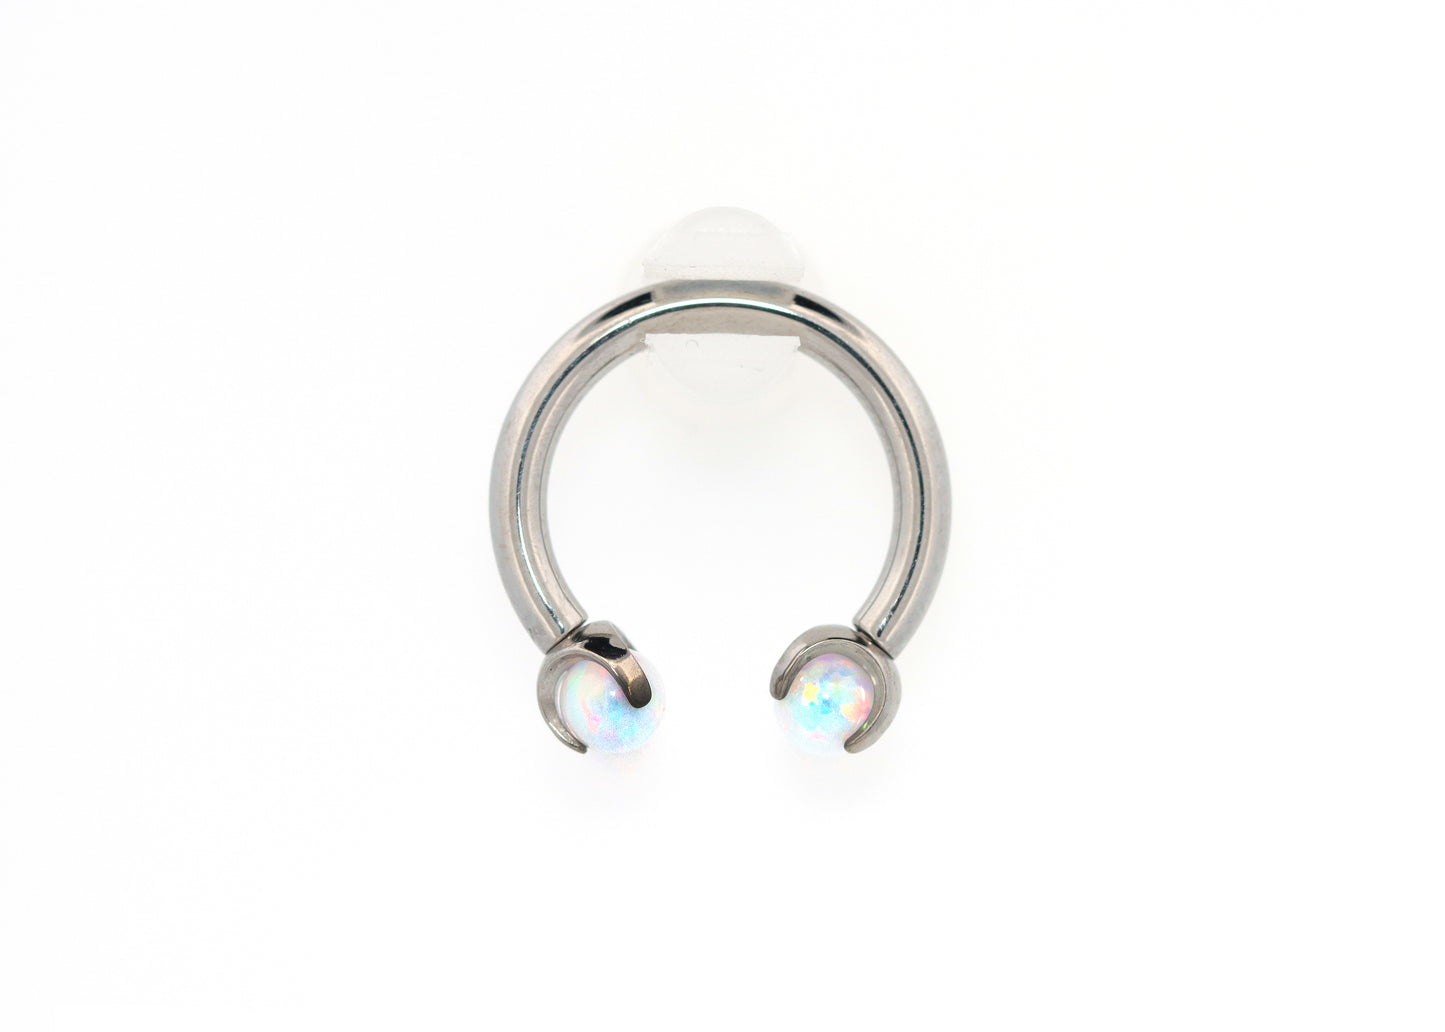 14g Titanium Circular Barbell White Opal end Septum Ring